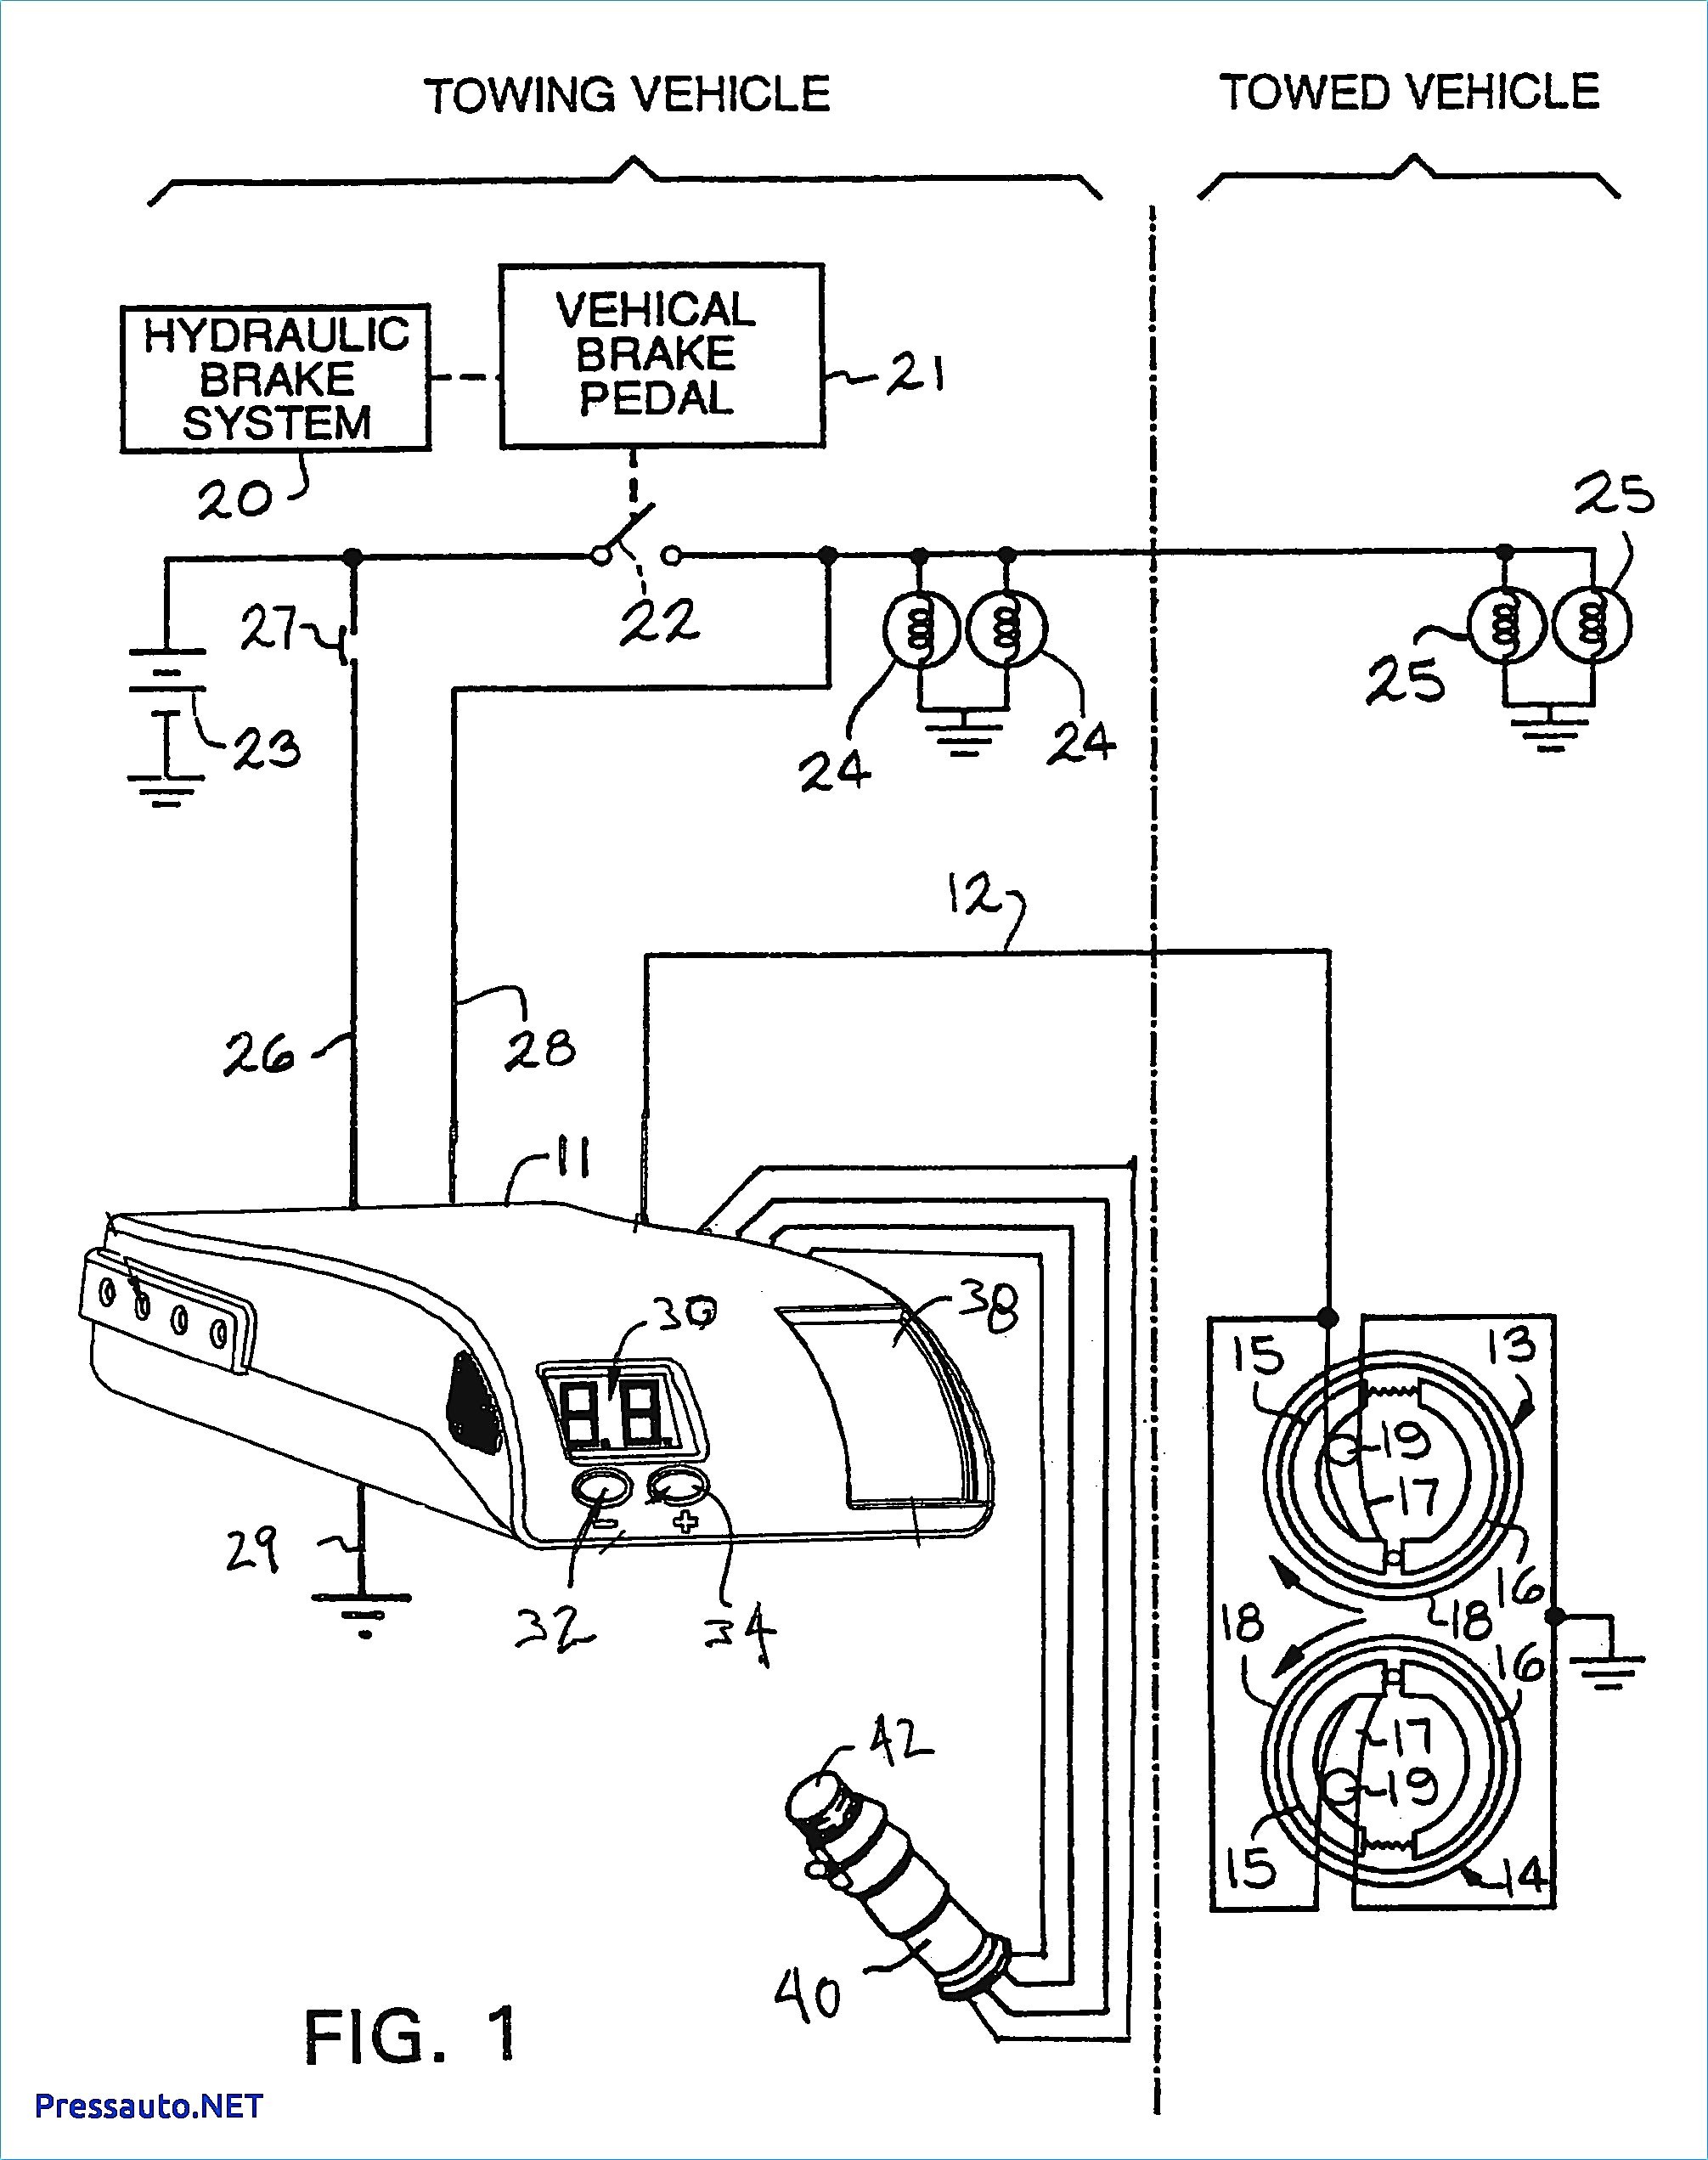 Auto Brake System Diagram Tekonsha Voyager Wiring Diagram Brake Controller Best Admirable at